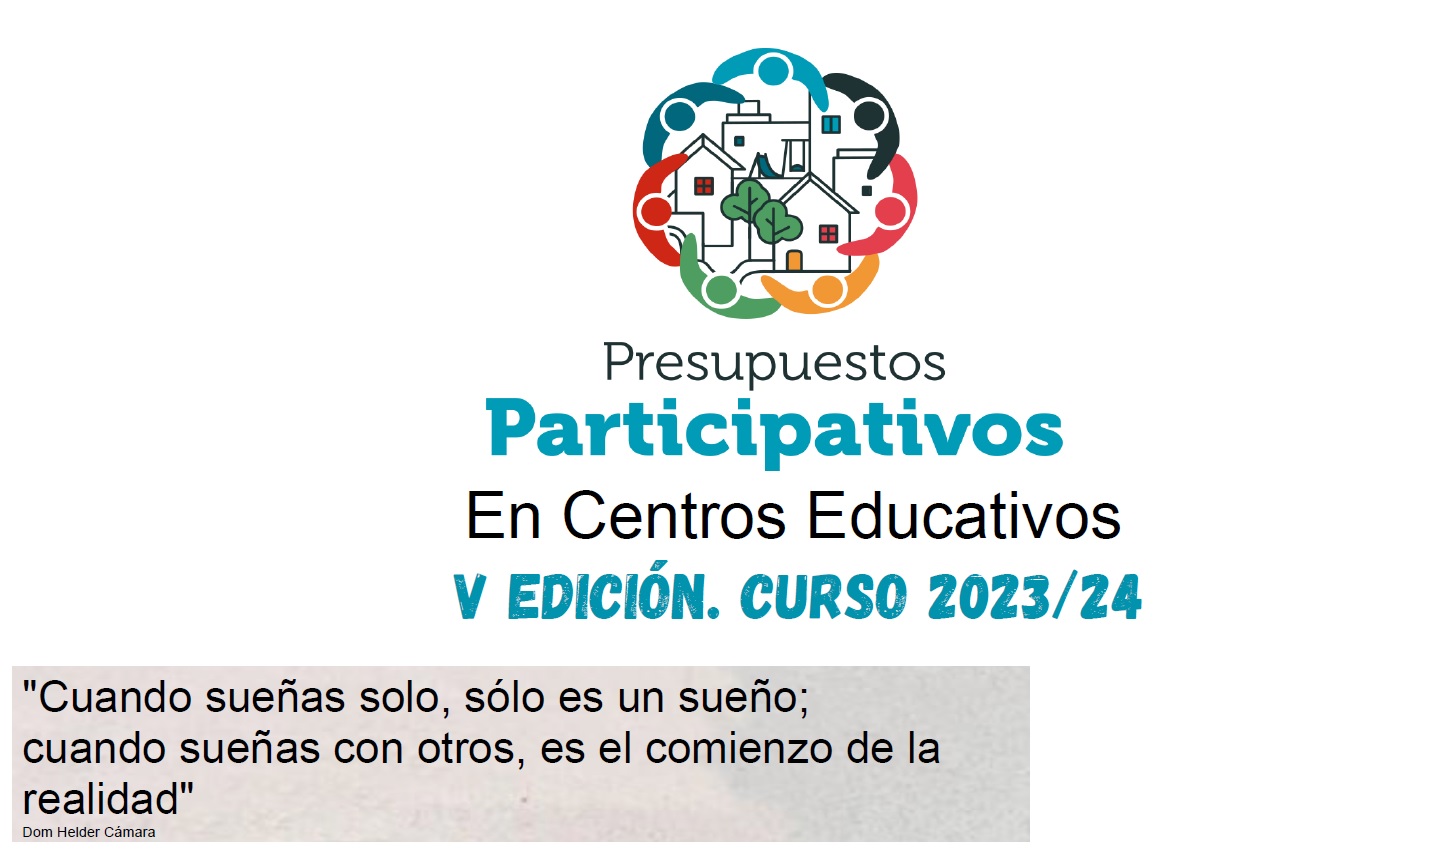 Colegio Público Vicente Ros - Presupuestos Participativos 2023/2024